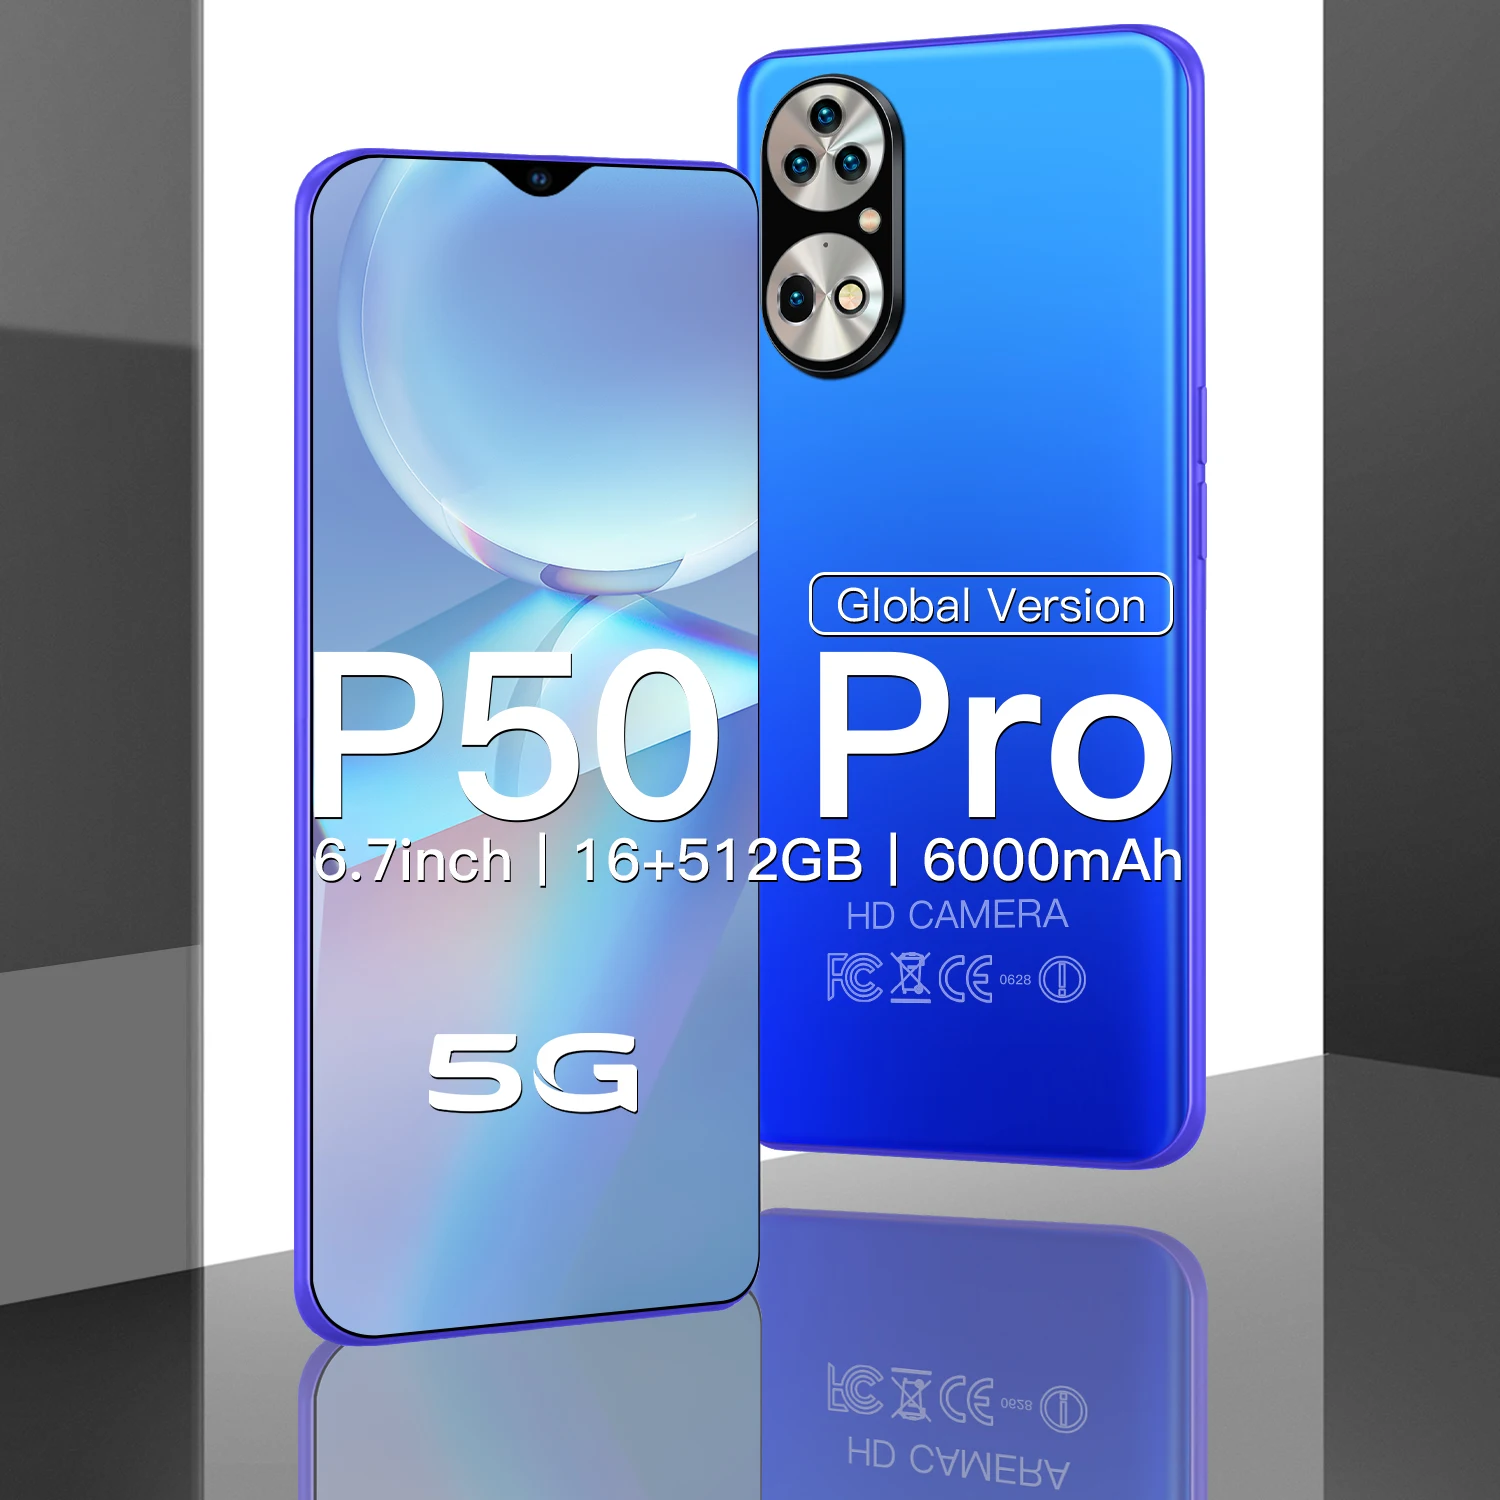 Новый смартфон HAUWEI P50 PRO 6 7 дюйма камера 24 Мп + 48 МП HD 16 512 ГБ 6000 мАч поддержка двух